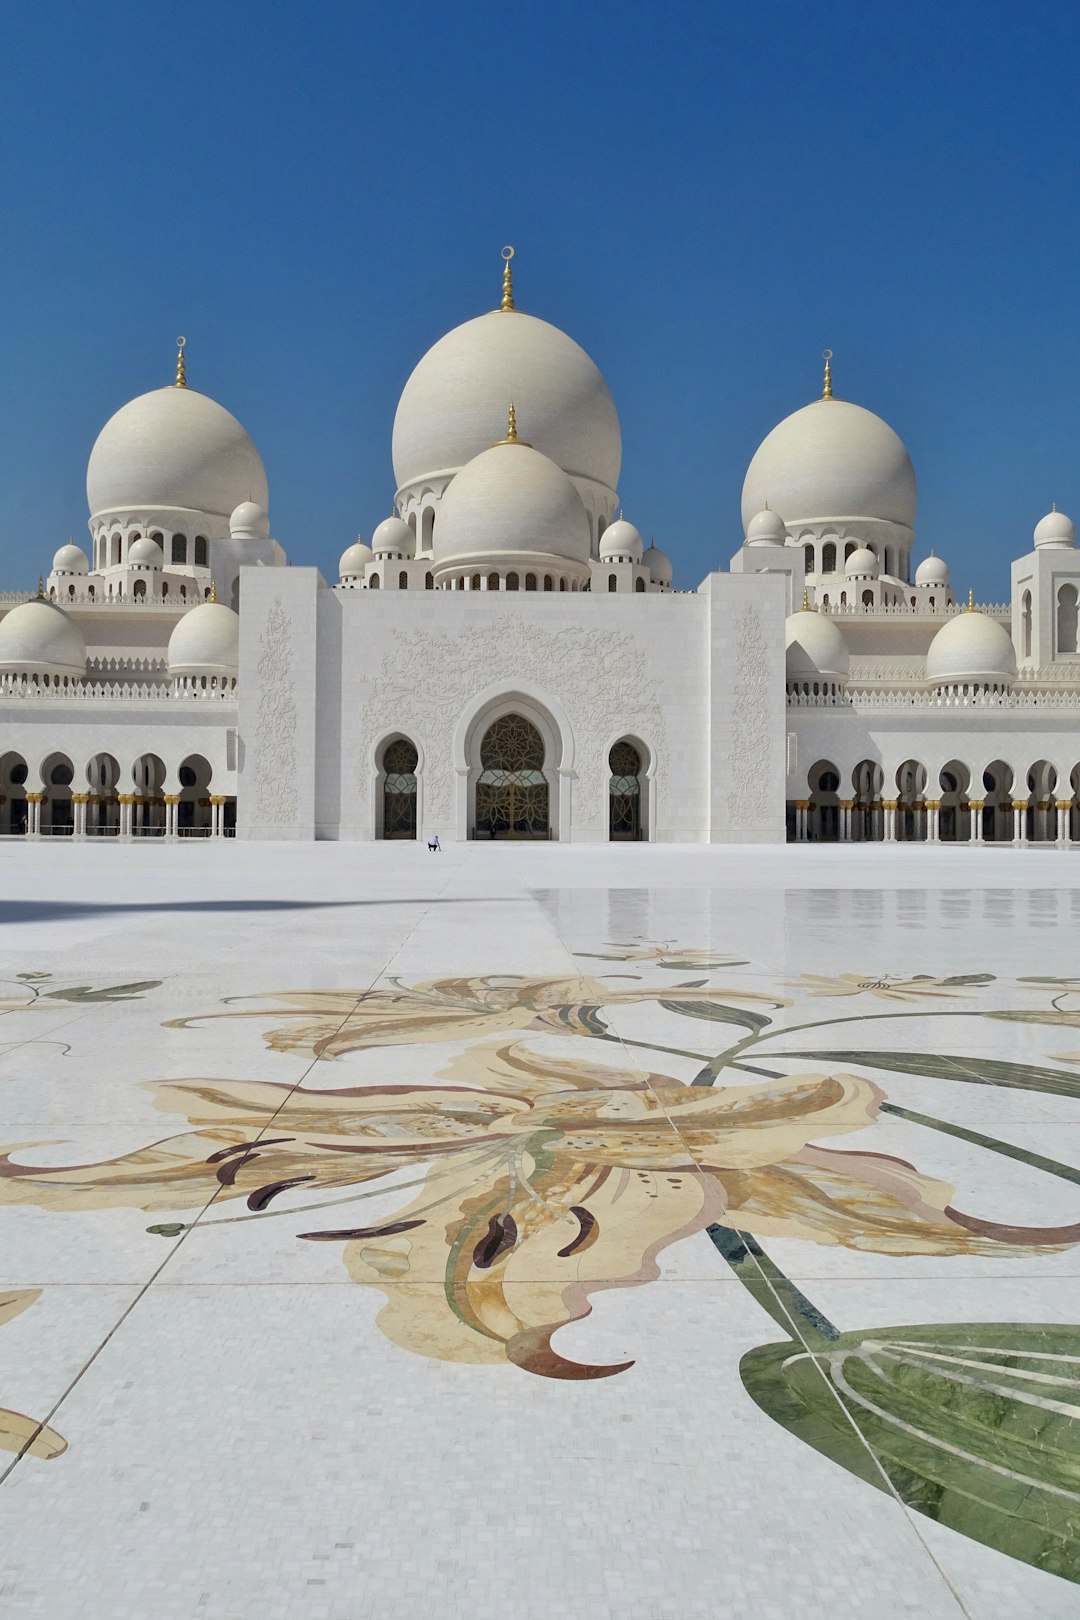 Landmark photo spot Al Rawdah - Abu Dhabi - United Arab Emirates Wahat Al Karama